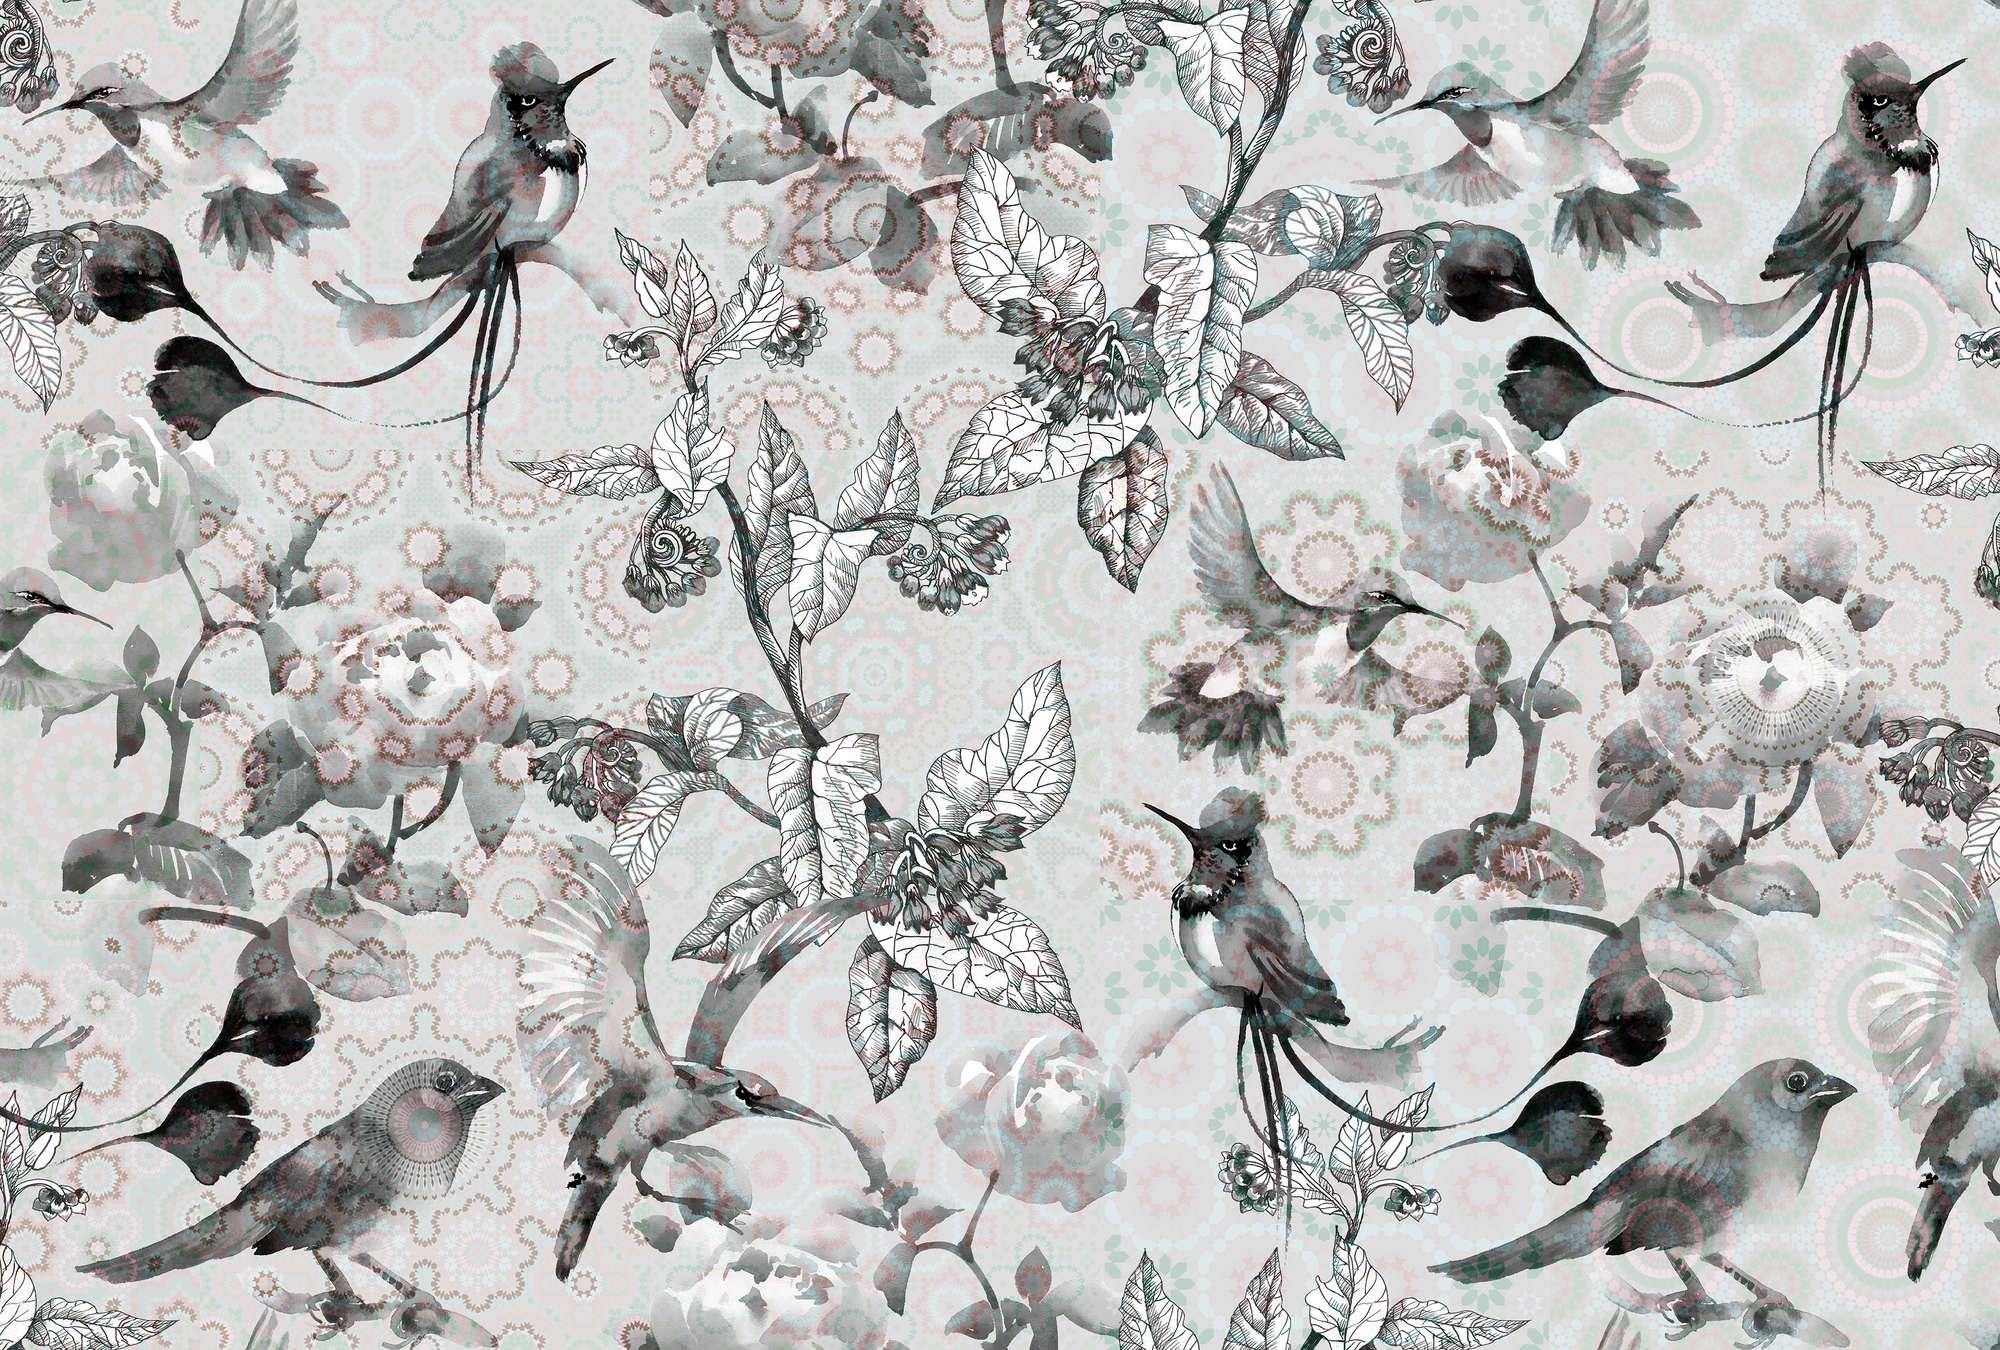             Fototapete Natur Design im Collage Stil – Grau, Weiß
        